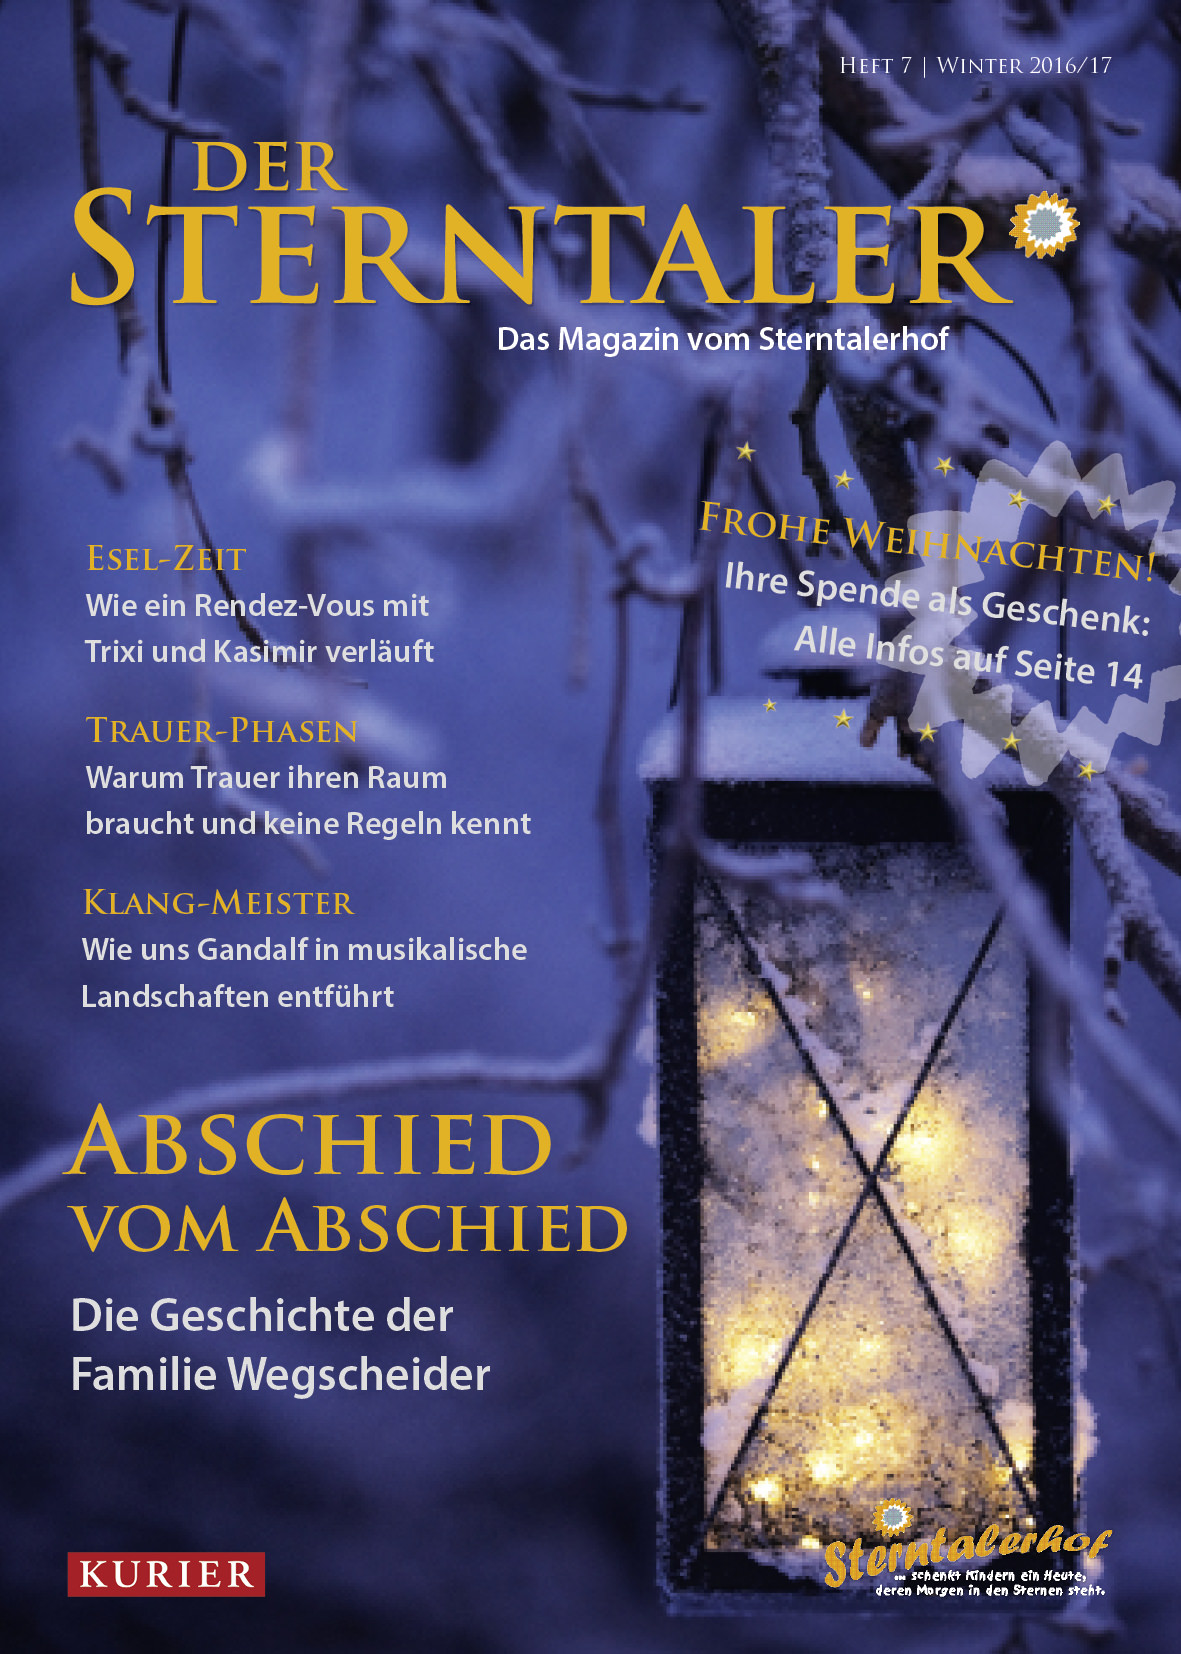 Der Sterntaler - Ausgabe 7, Winter 2016/17